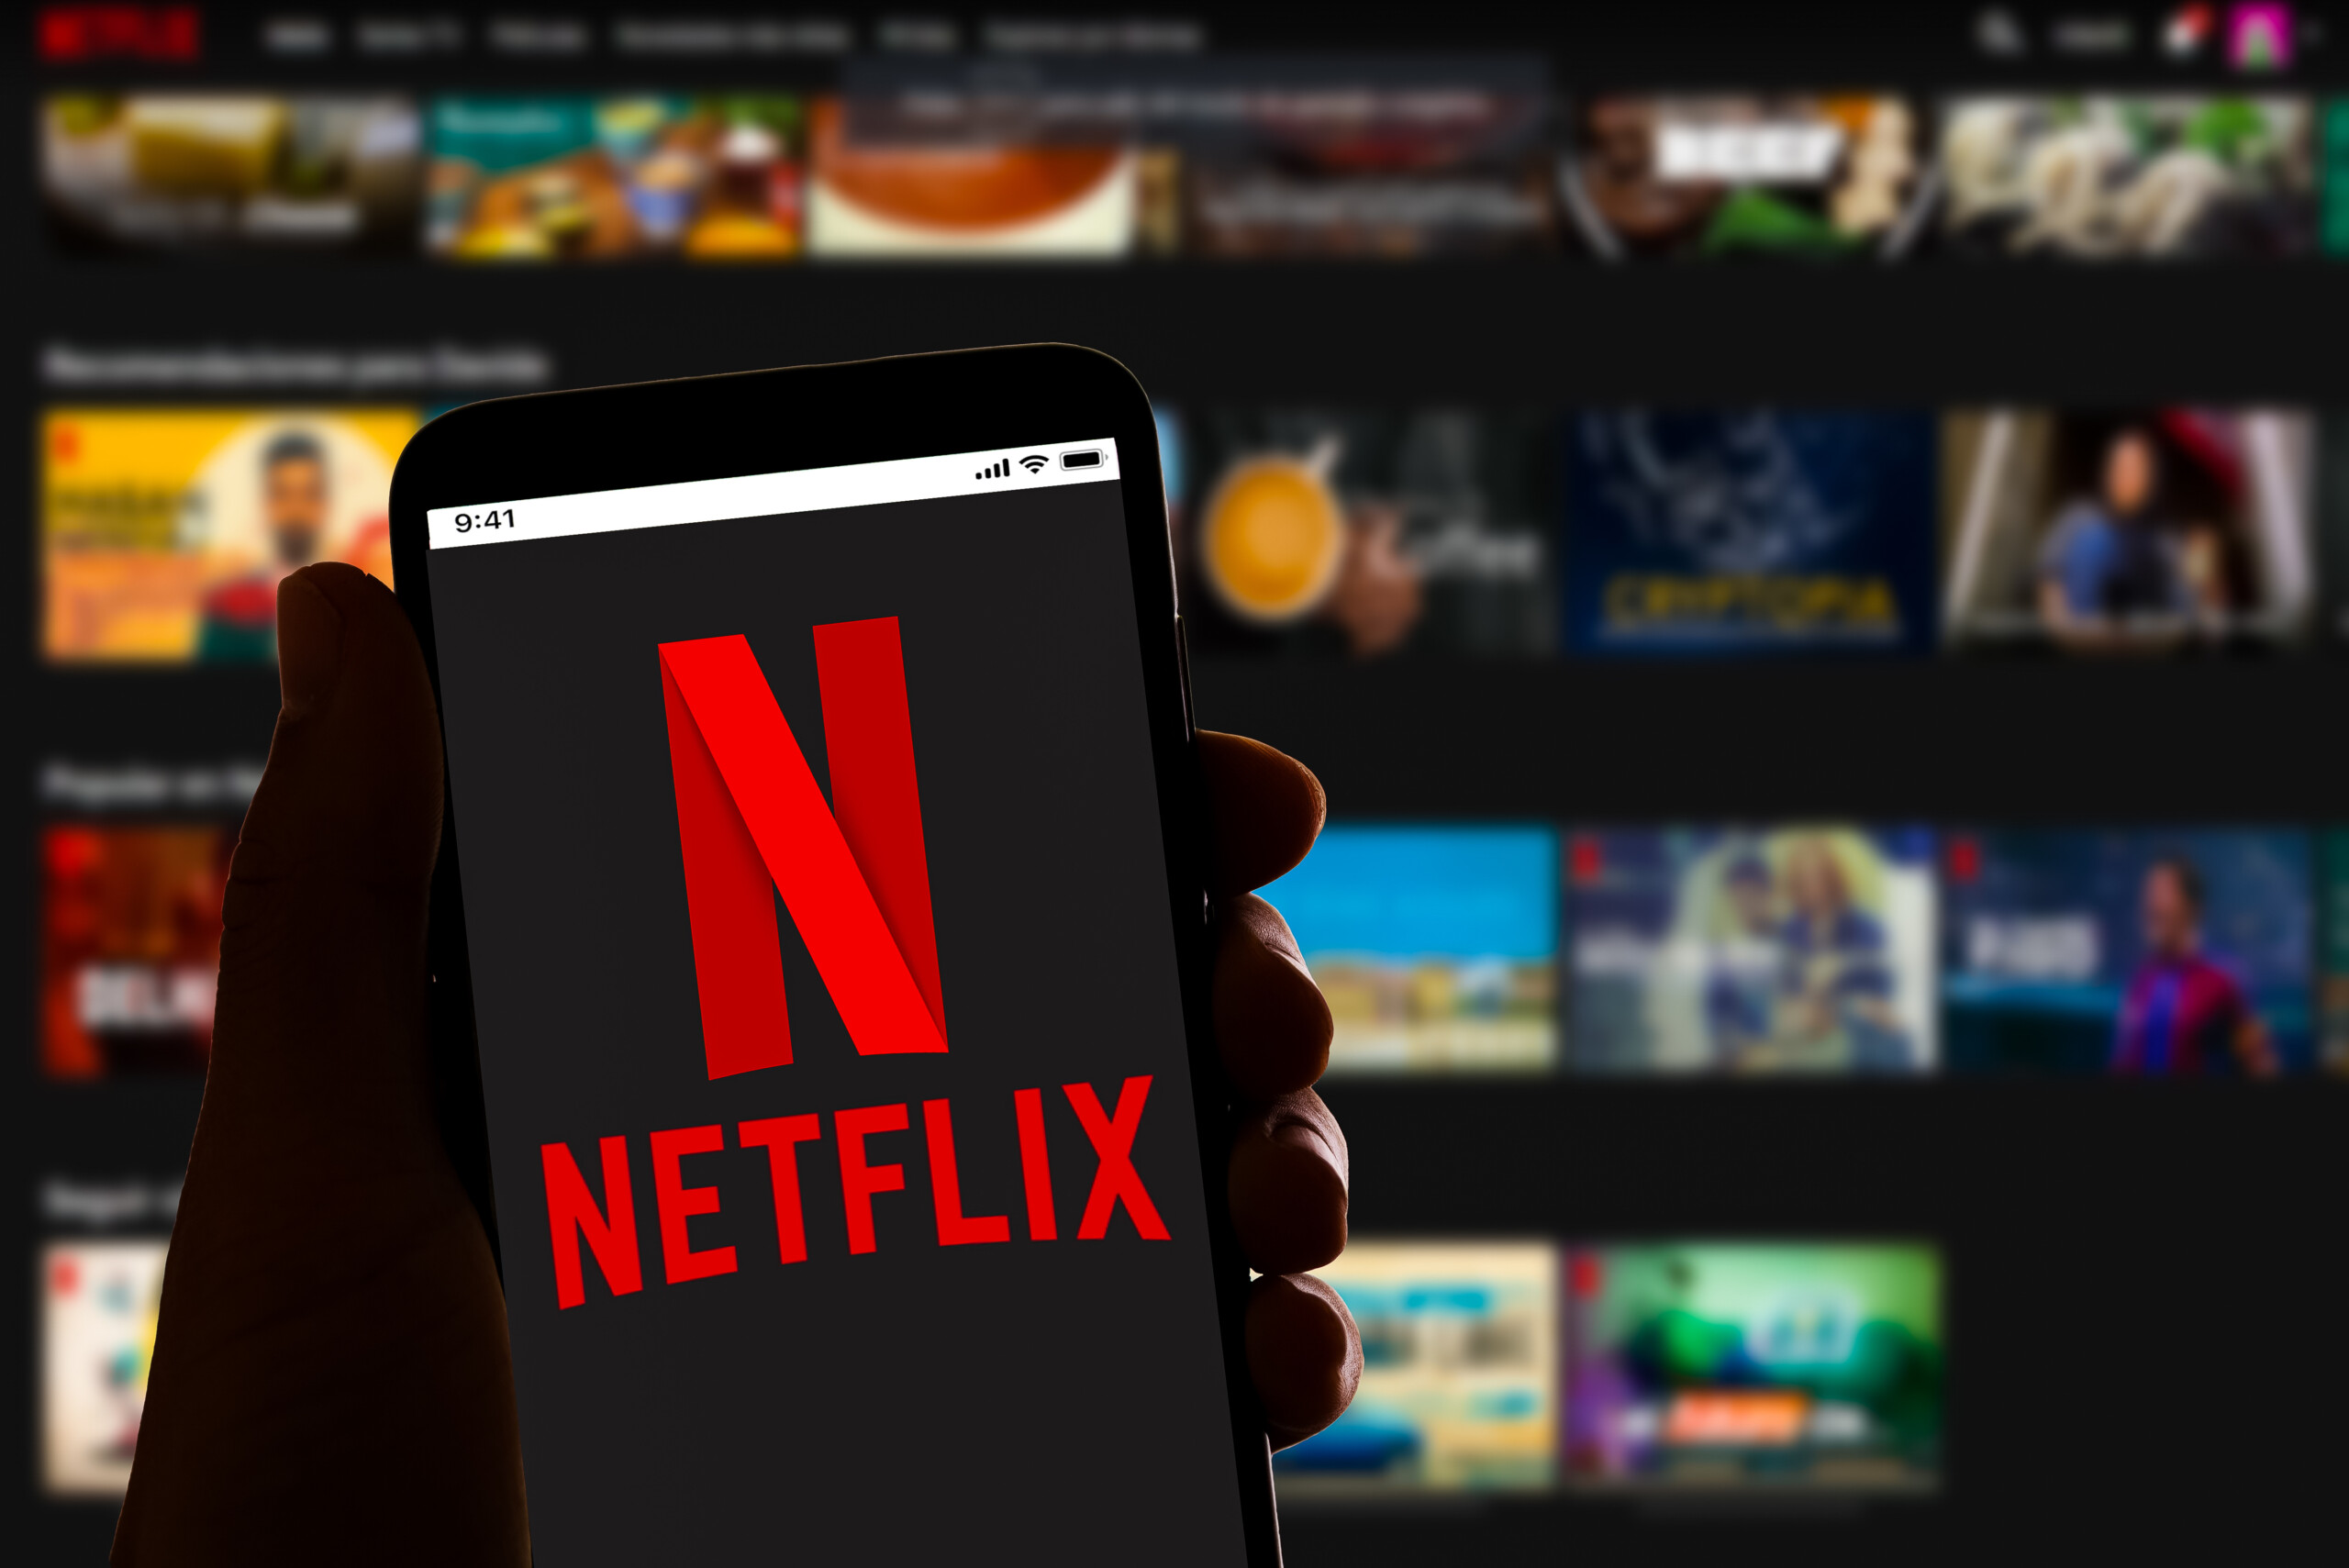 Weltweit nutzen rund 40 Mio. Menschen den werbefinanzierten Tarif von Netflix – doppelt so viele wie im Januar